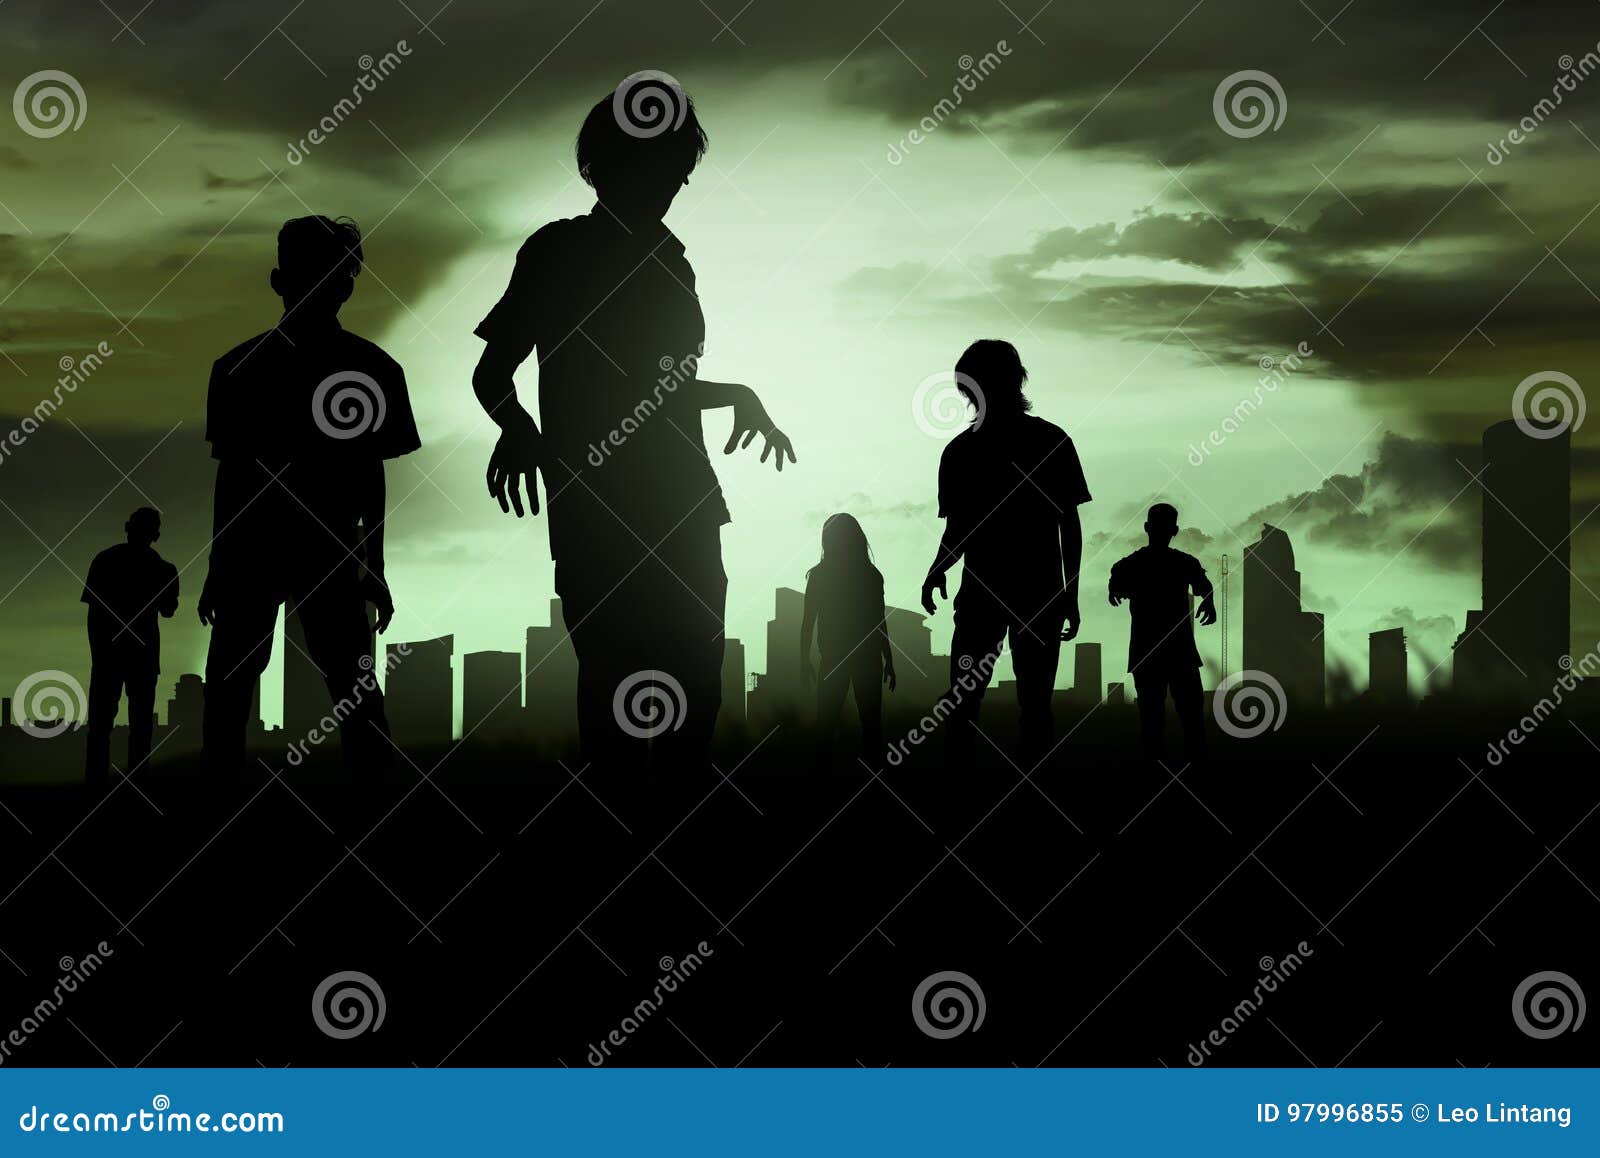 silhoutte of zombies walking